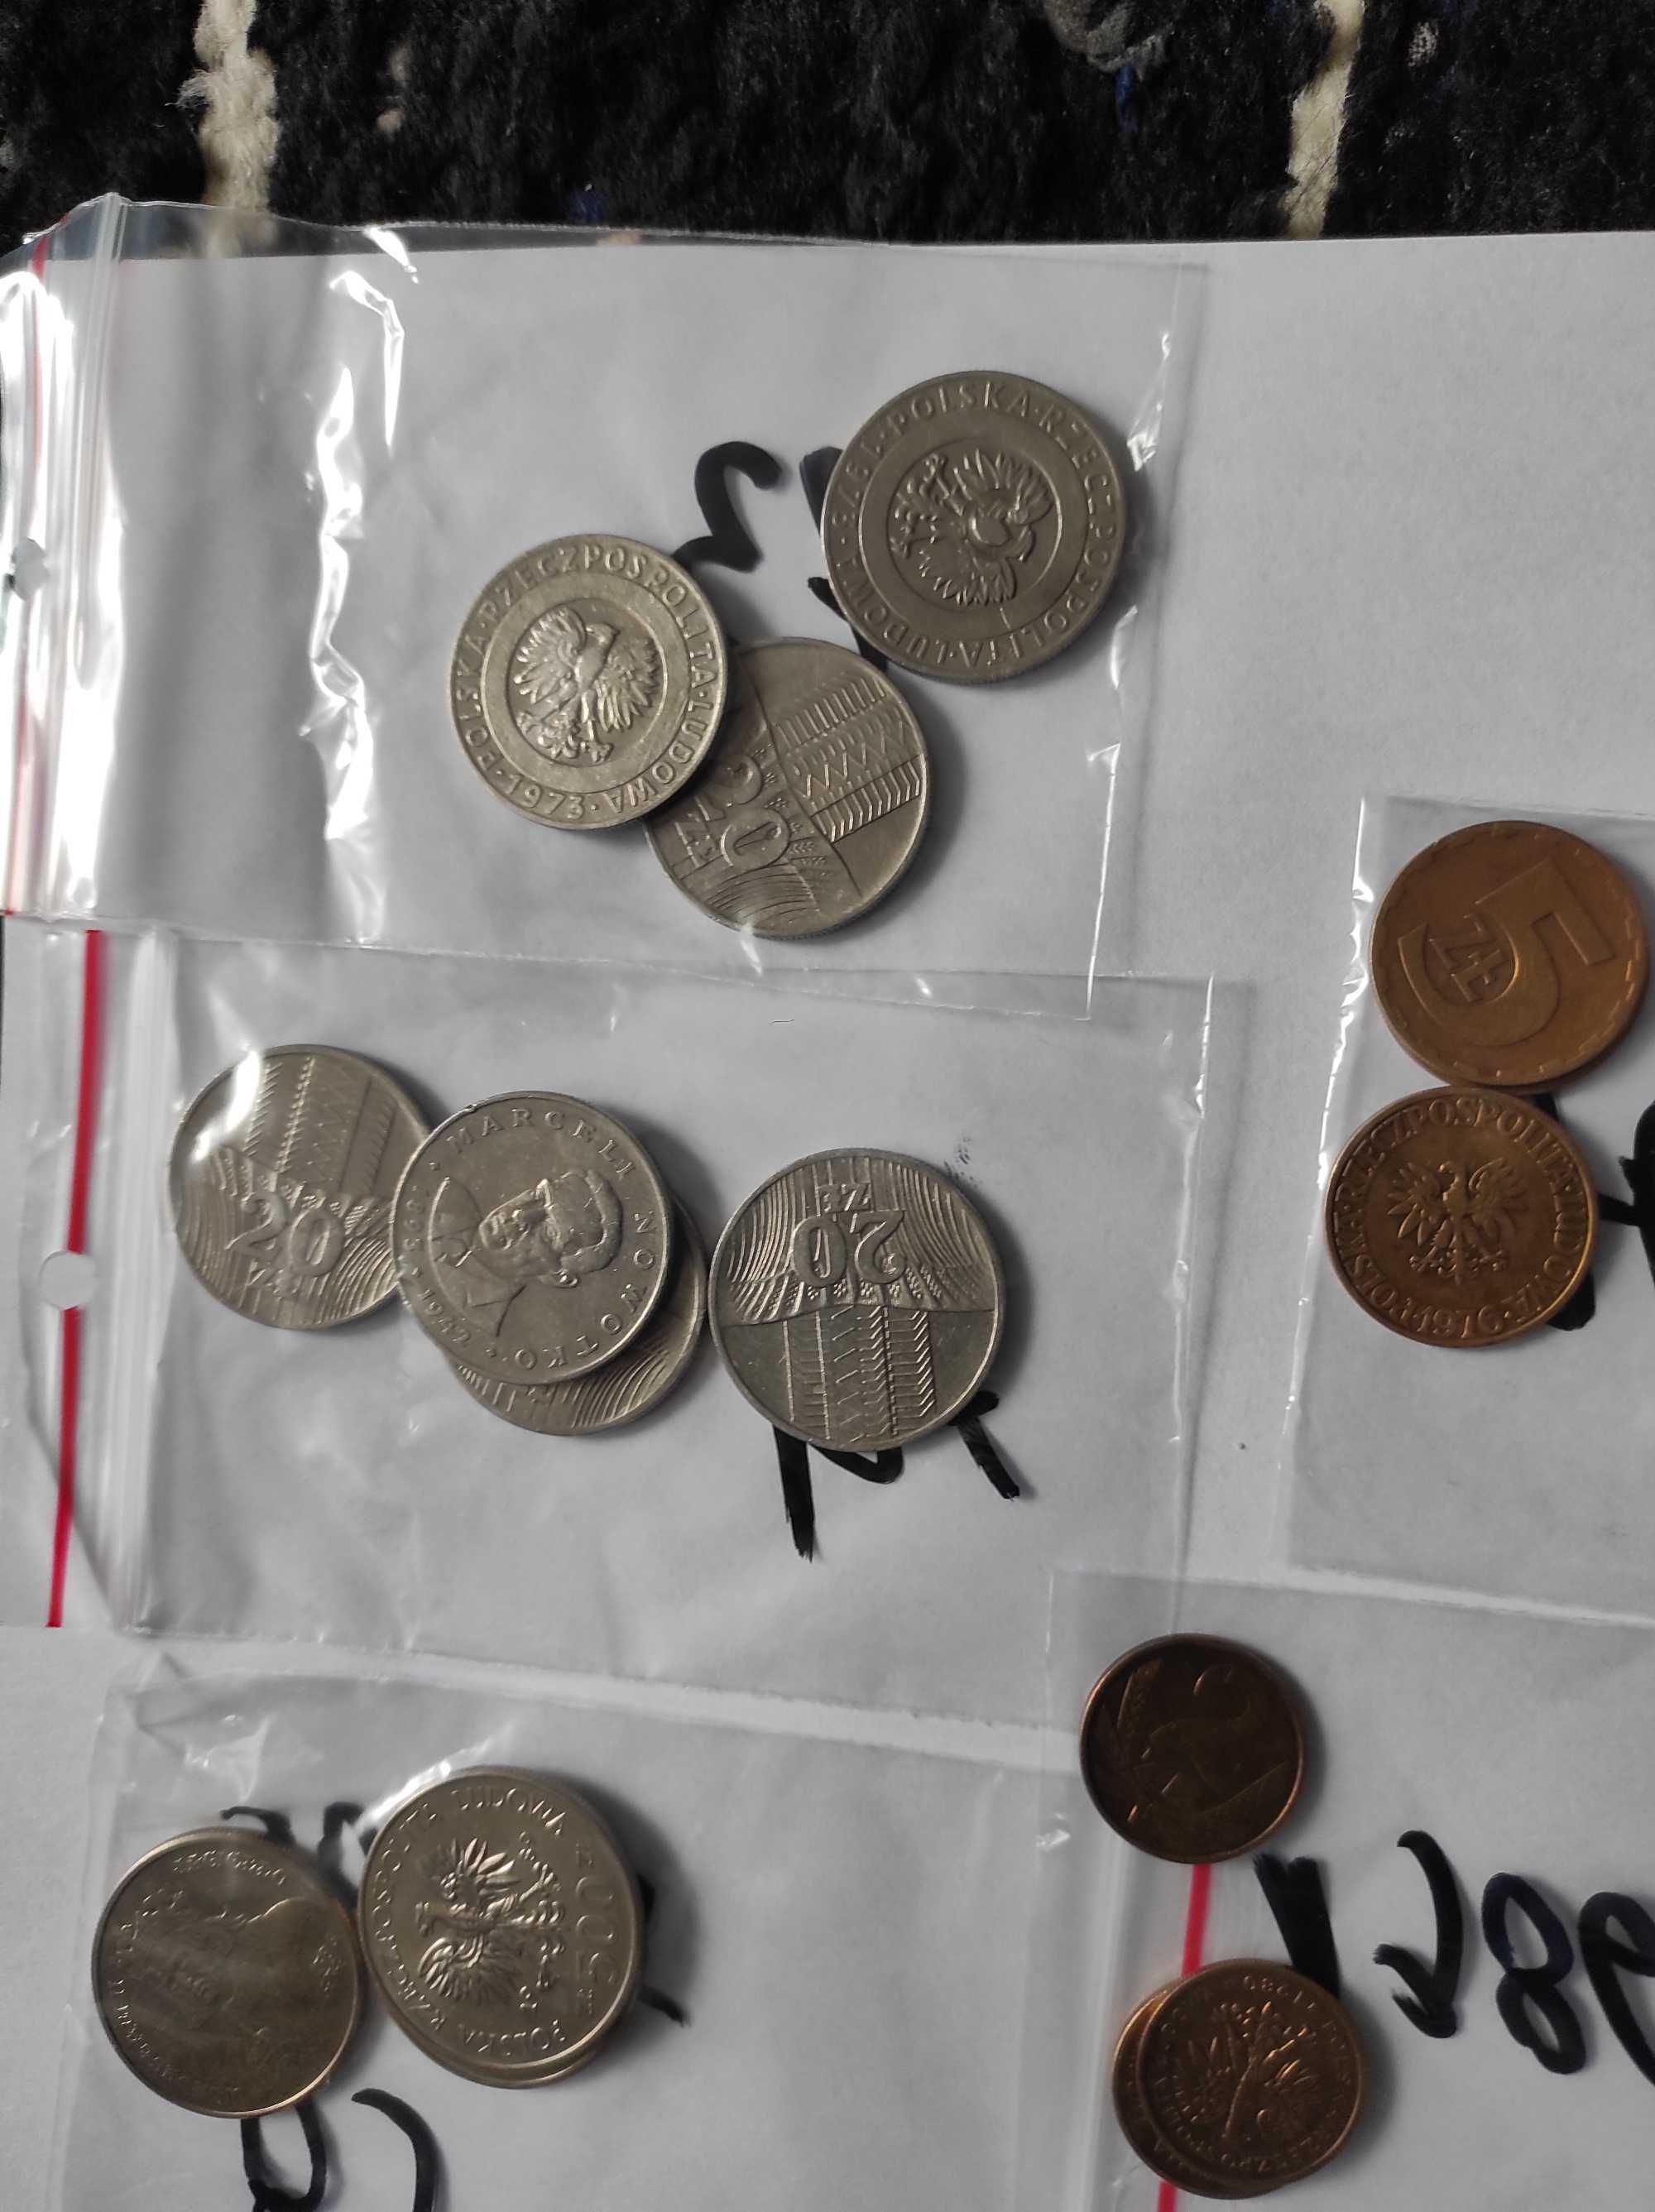 Sprzedam monety z okresu PRL